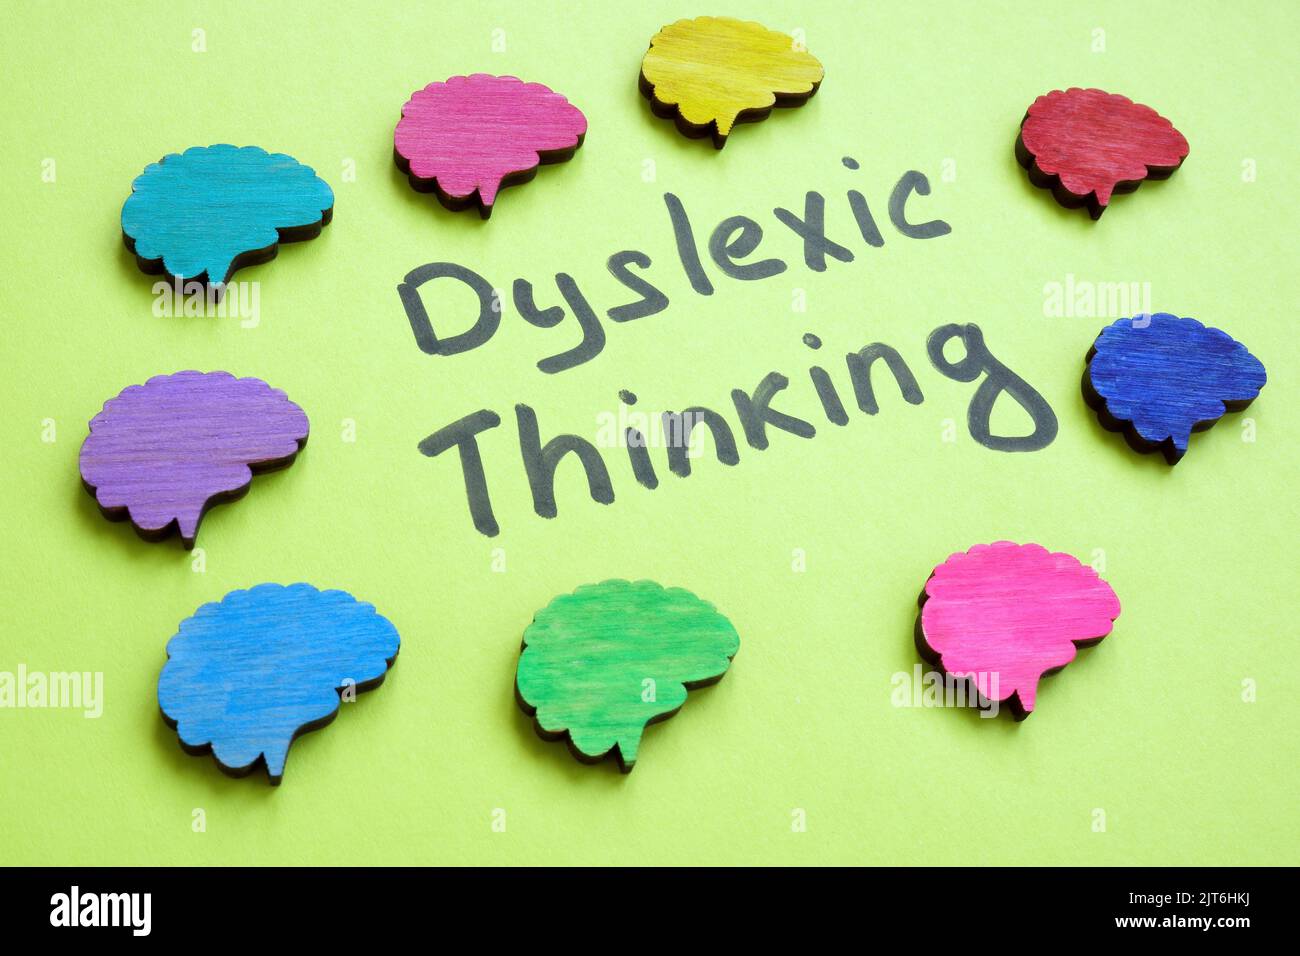 La muestra del pensamiento dyslexic y los cerebros coloridos alrededor. Foto de stock